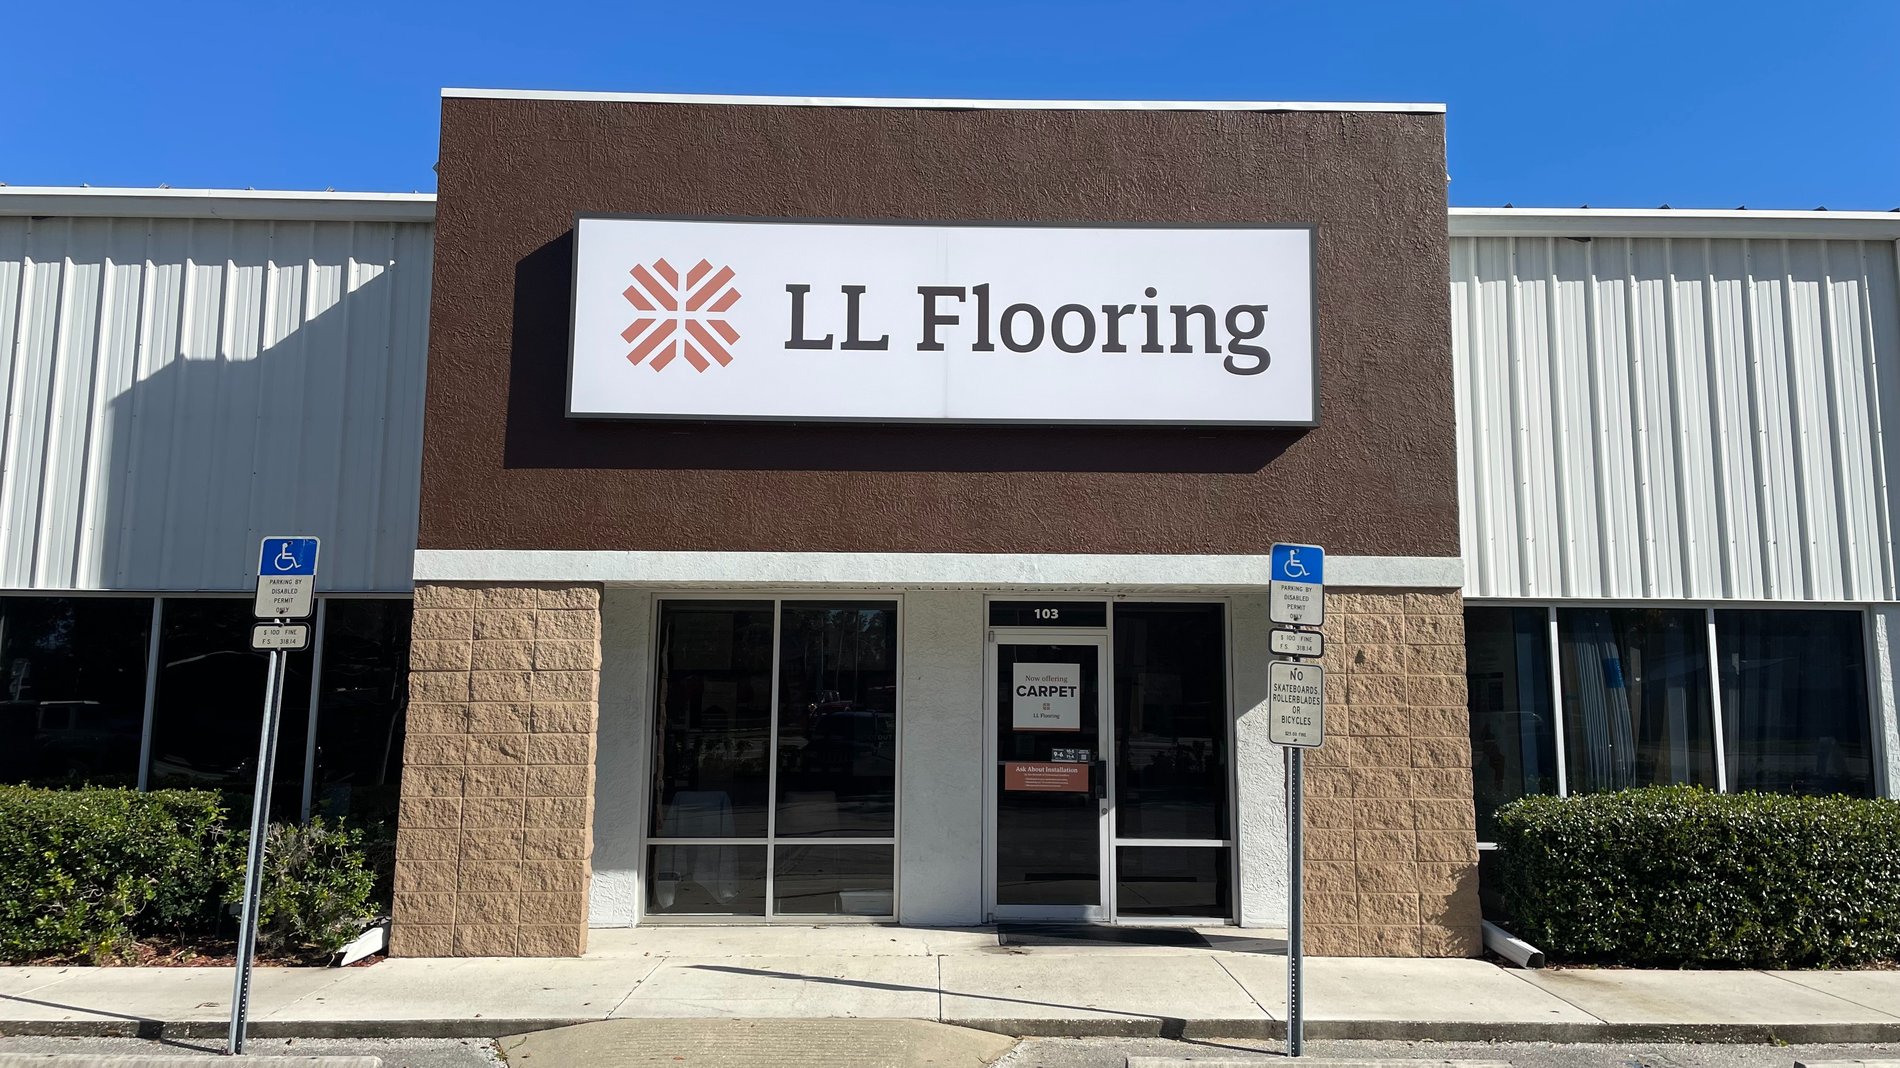 LL Flooring #1180 Holly Hill | 1757 N. Nova Rd | Storefront